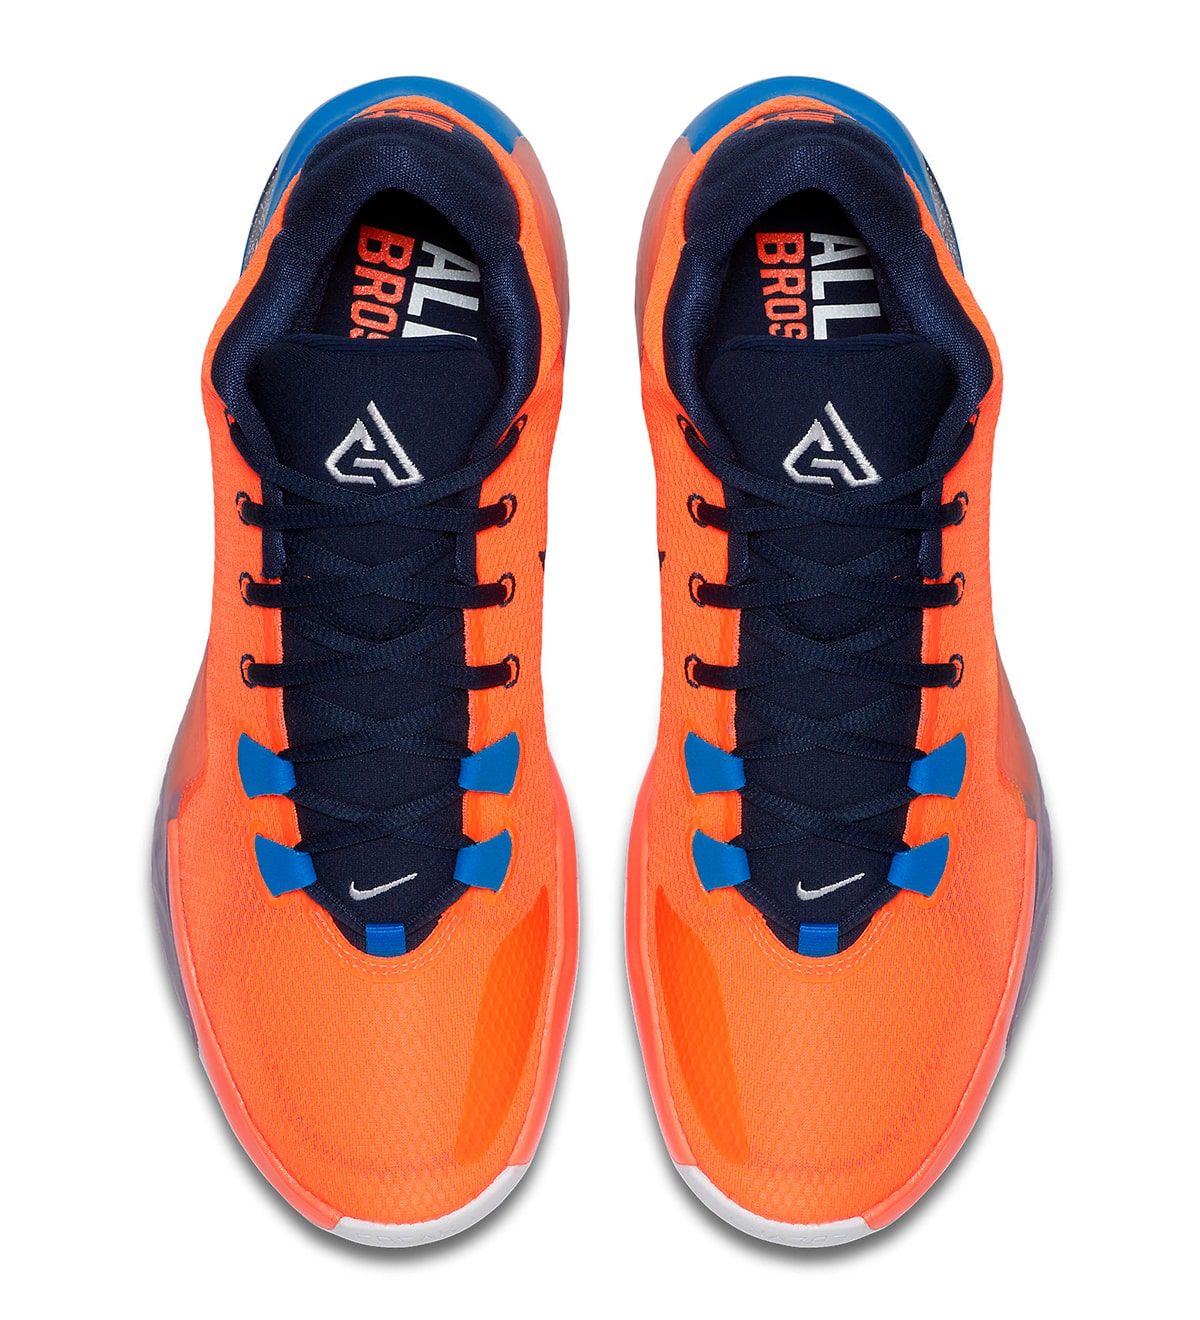 Available Now // Giannis Antetokounmpo's Nike Zoom Freak 1 